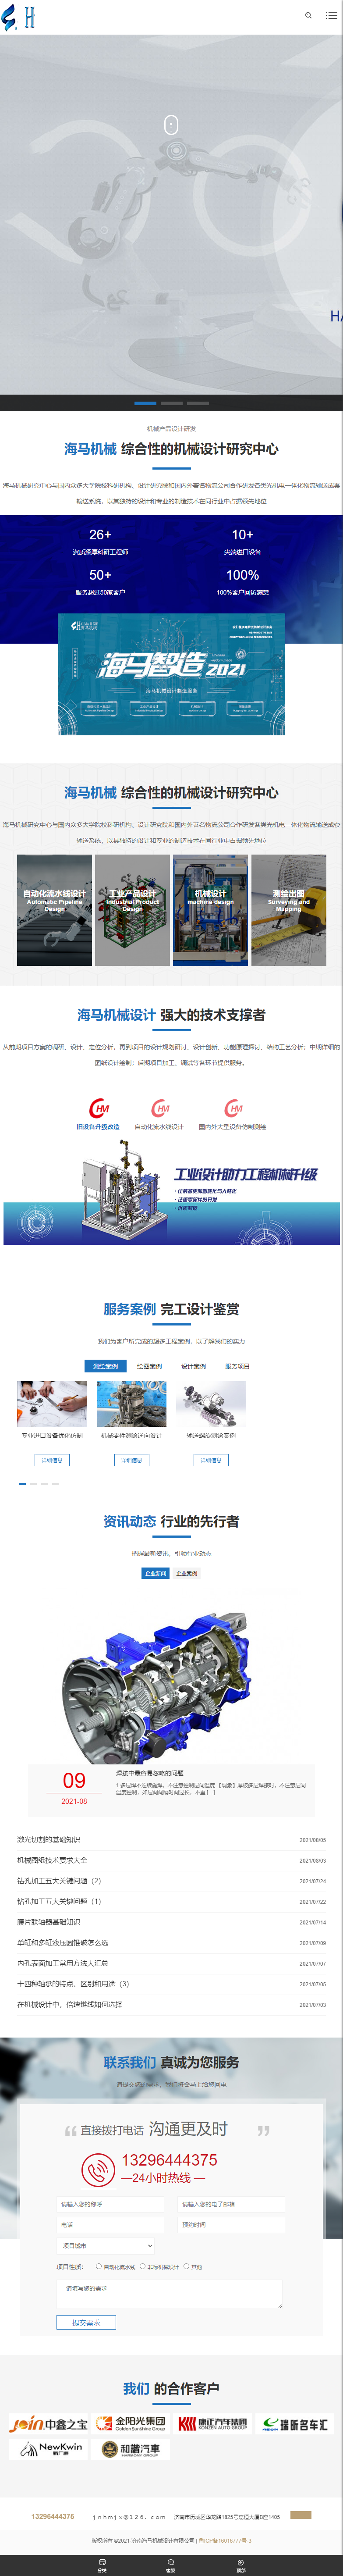 济南海马机械设计有限公司网站案例